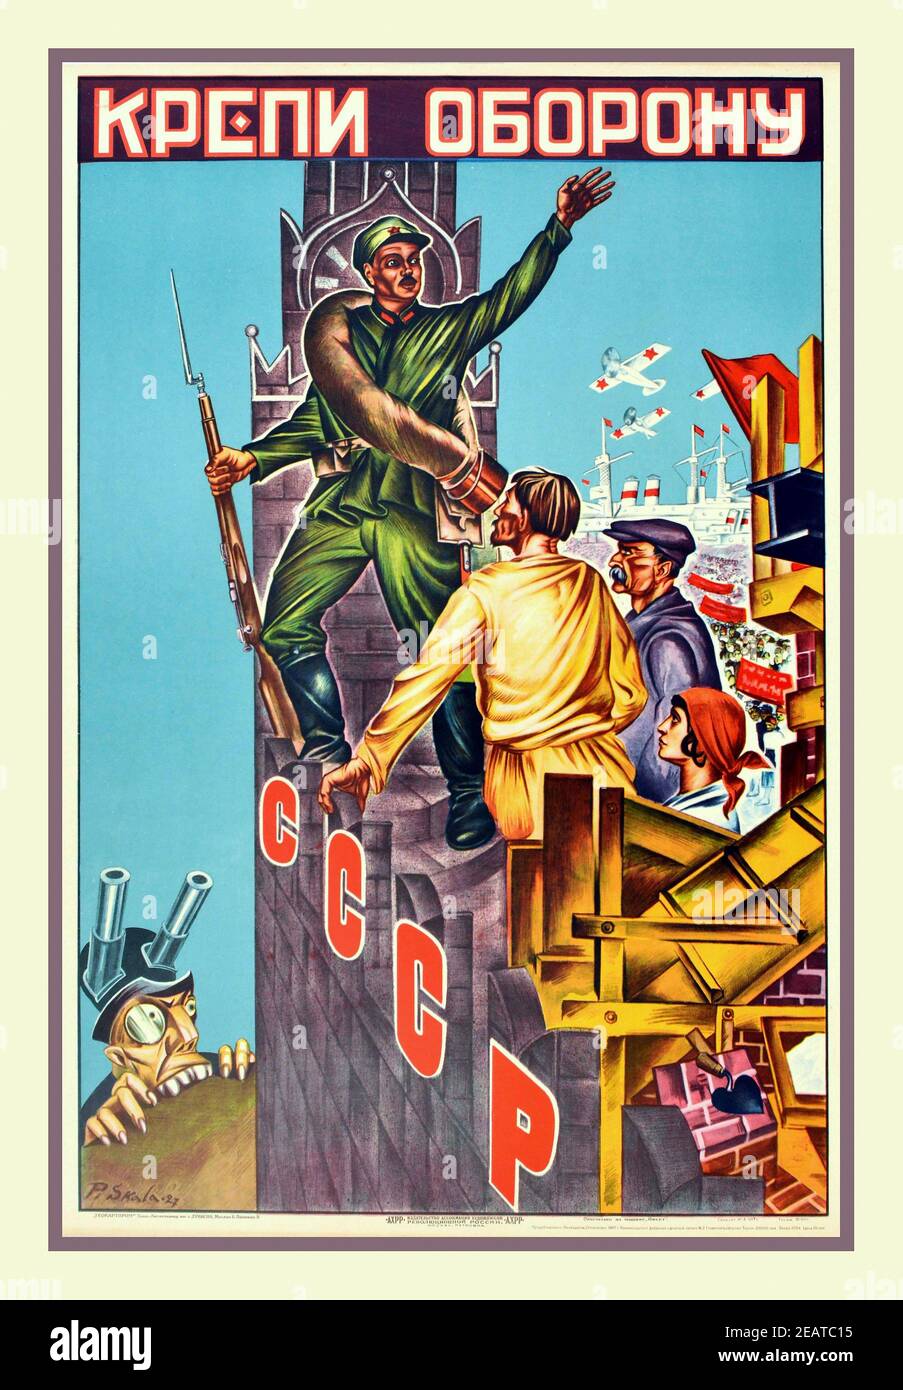 Le gouvernement soviétique d'époque a régénéré une affiche de propagande réédition de 1927 - renforcer la défense avec un soldat tenant une baïonnette et debout sur un mur construit par des travailleurs et des ouvriers. Un personnage capitaliste de style gremlin avec des canons à canon sur son chapeau est en les espionnant depuis le fond du mur. Pays d'édition: Russie, designer: P. Skala, année de l'impression: 1967 Banque D'Images